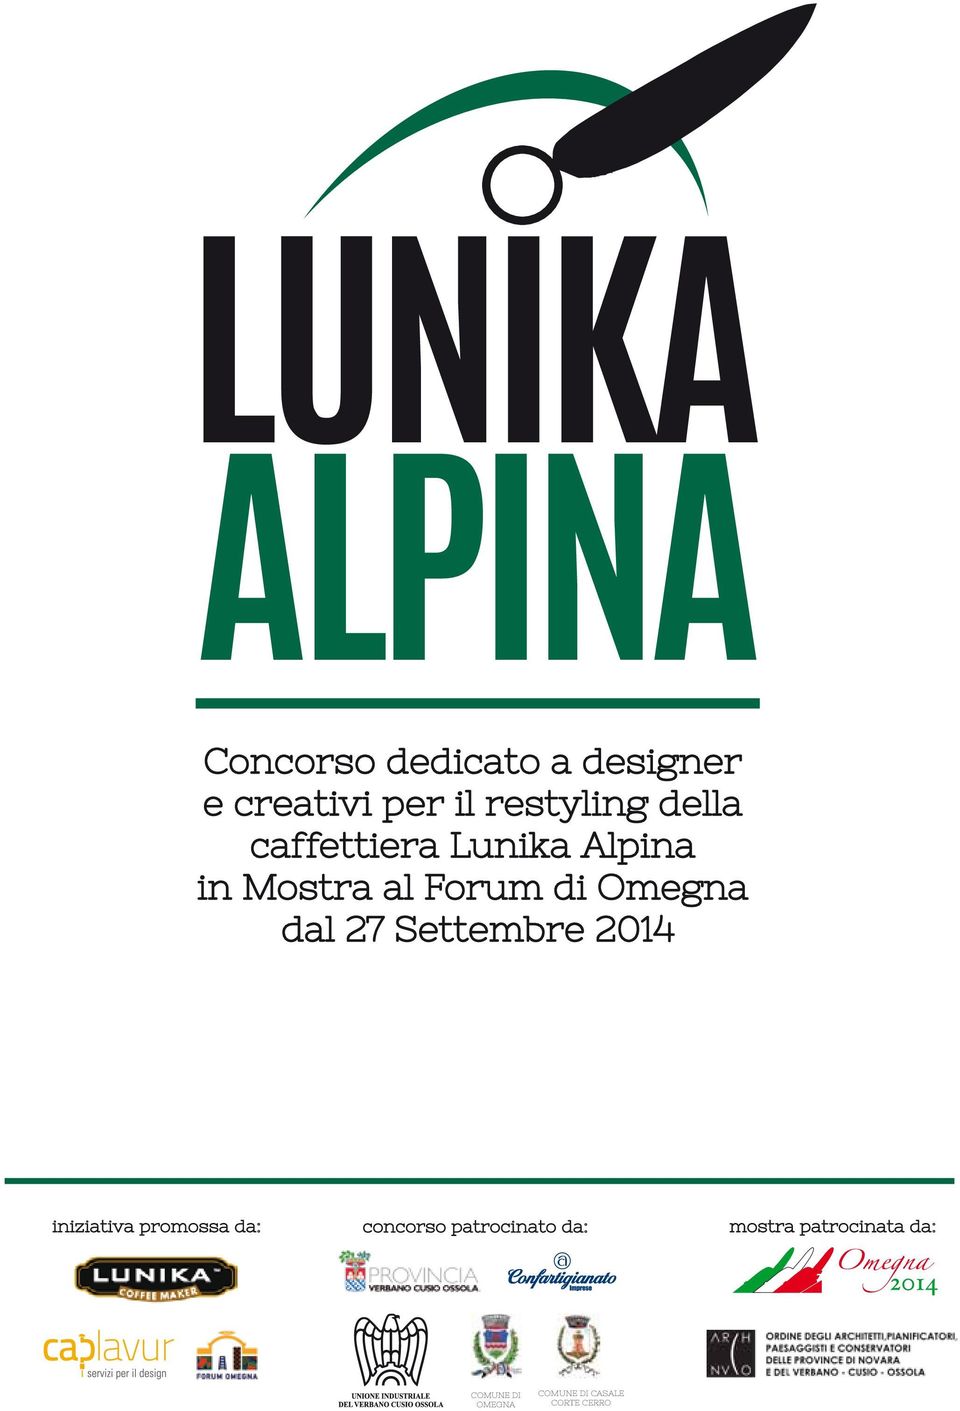 Lunika Alpina in Mostra al Forum di Omegna dal 27